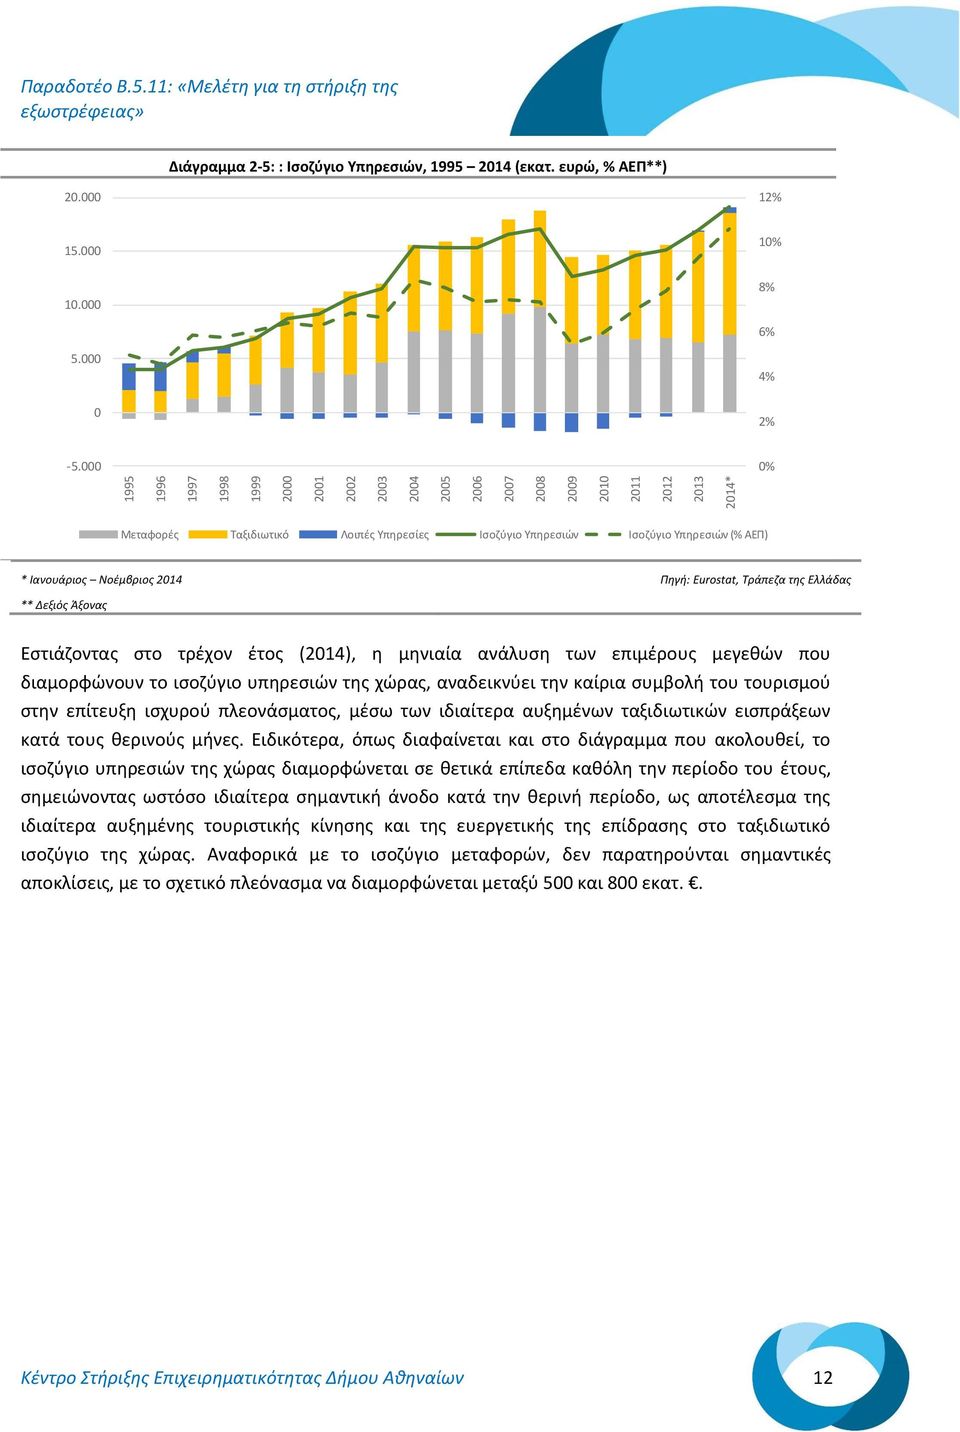 Ιανουάριος Νοέμβριος 2014 Πηγή: Eurostat, Τράπεζα της Ελλάδας ** Δεξιός Άξονας Εστιάζοντας στο τρέχον έτος (2014), η μηνιαία ανάλυση των επιμέρους μεγεθών που διαμορφώνουν το ισοζύγιο υπηρεσιών της